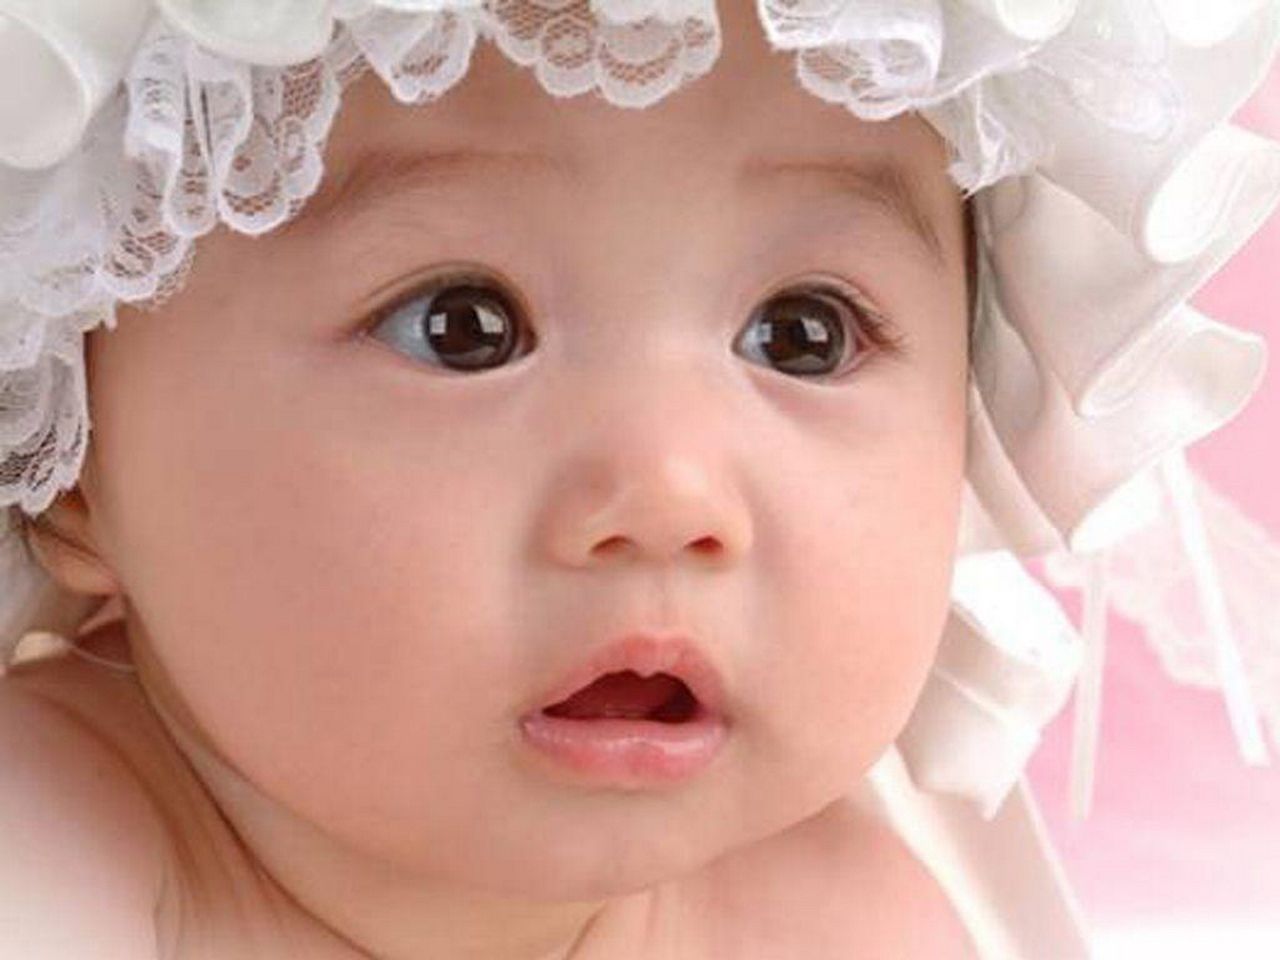 귀여운 아기 사진 배경 화면,아이,얼굴,아가,말뿐인,머리